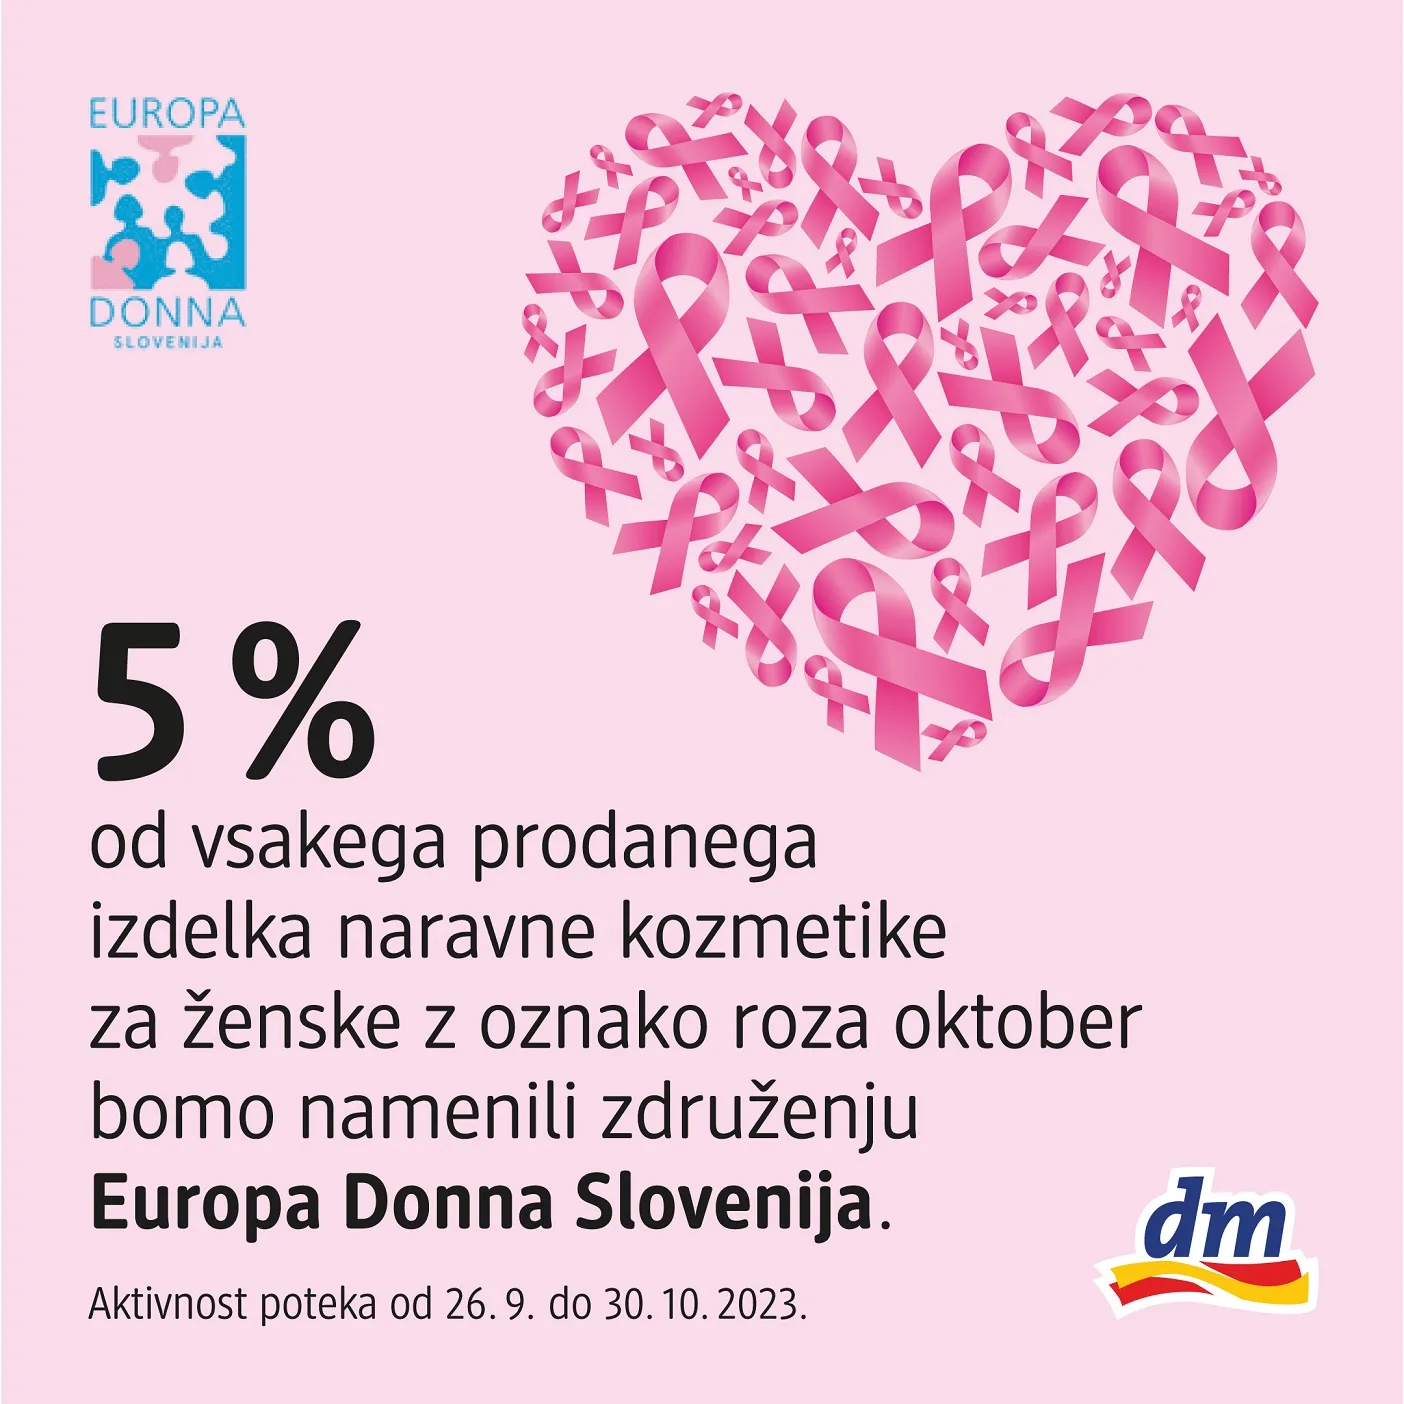 Roza oktober v dm Slovenija - Modna.si